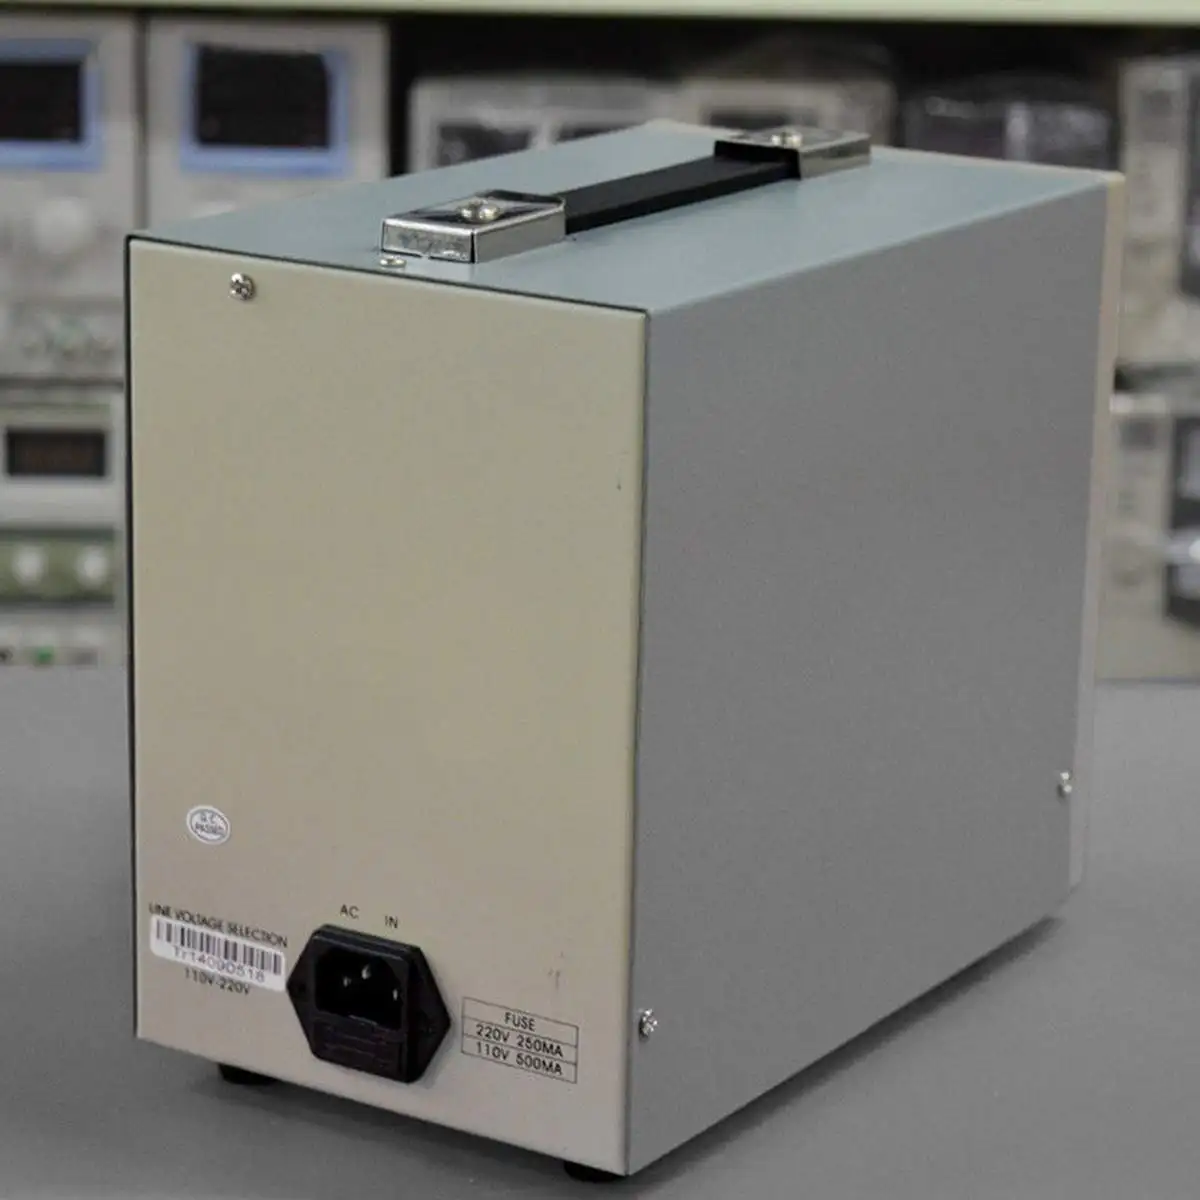 110 V/220 V Низкочастотный генератор сигналов 10Hz-1 MHz звуковой генератор сигнала источник производитель электронный измерительный прибор инструменты